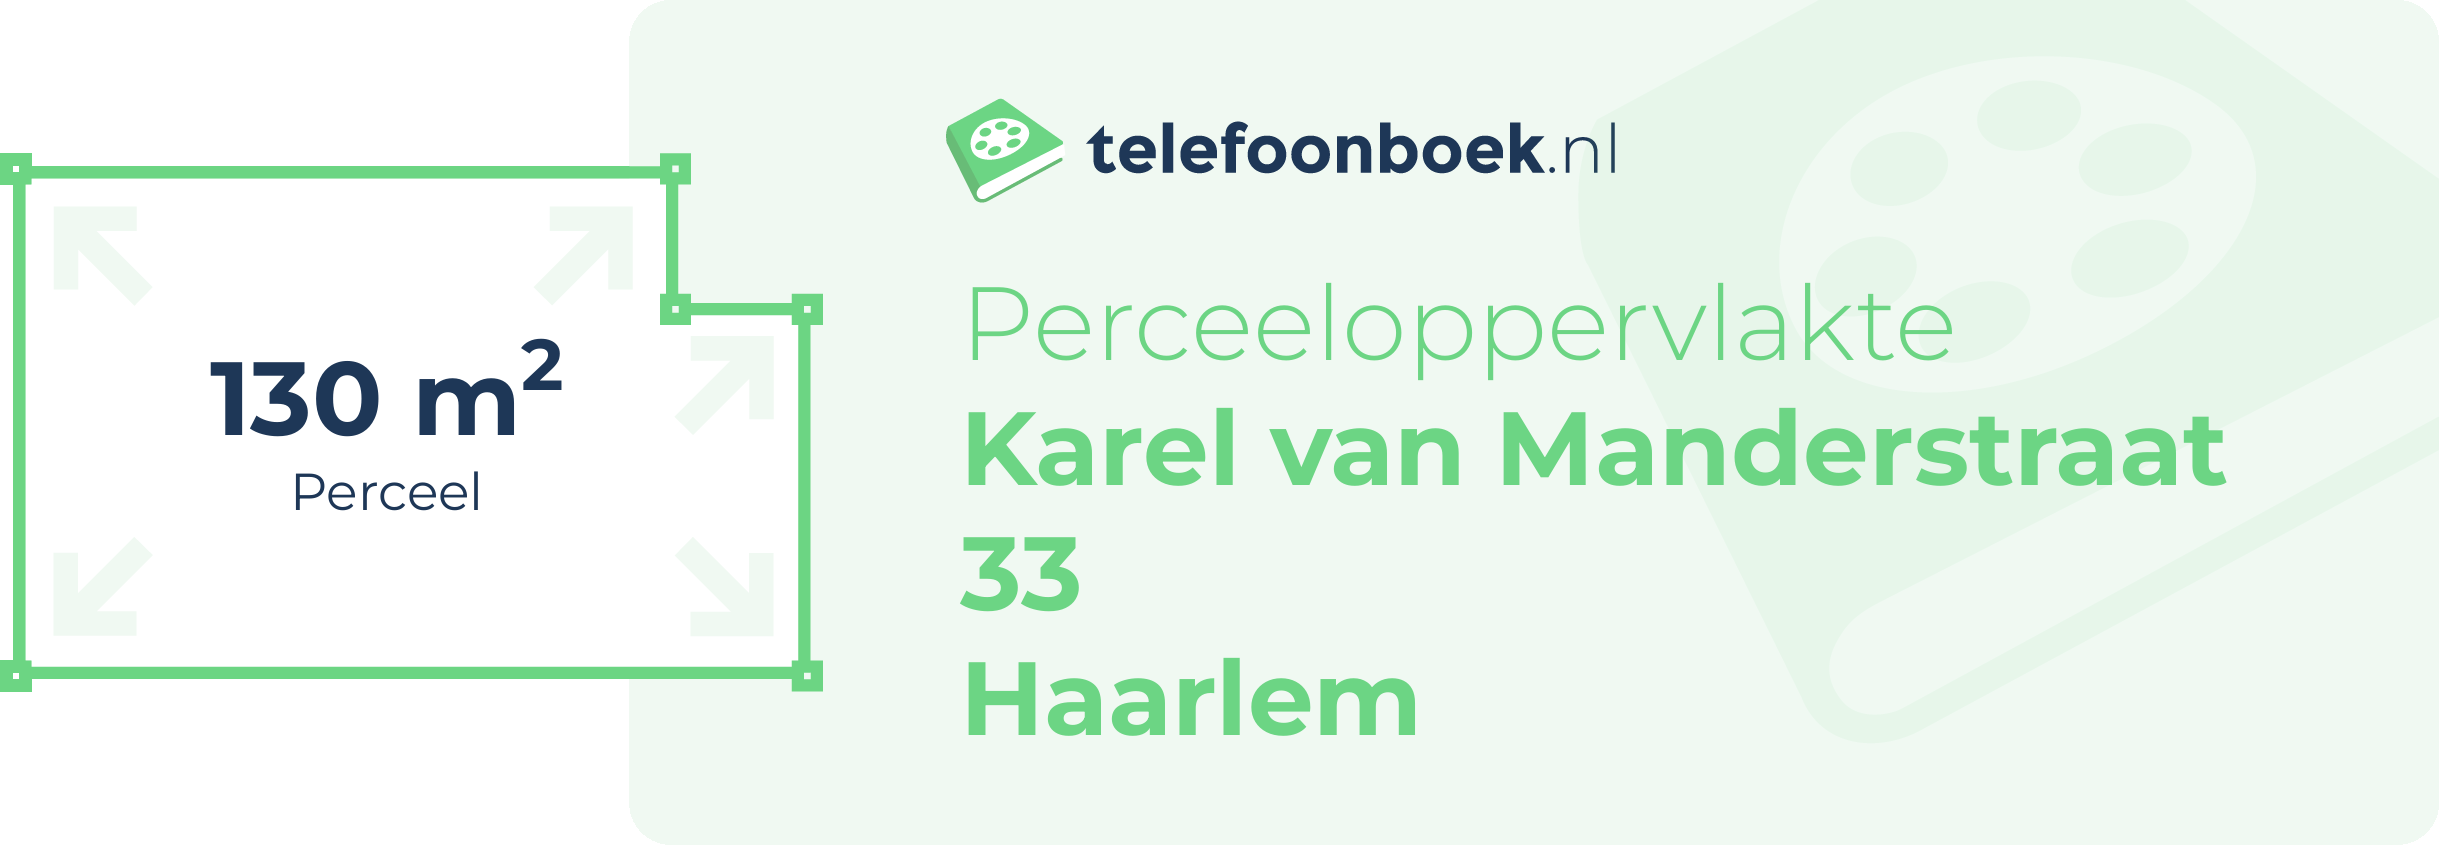 Perceeloppervlakte Karel Van Manderstraat 33 Haarlem